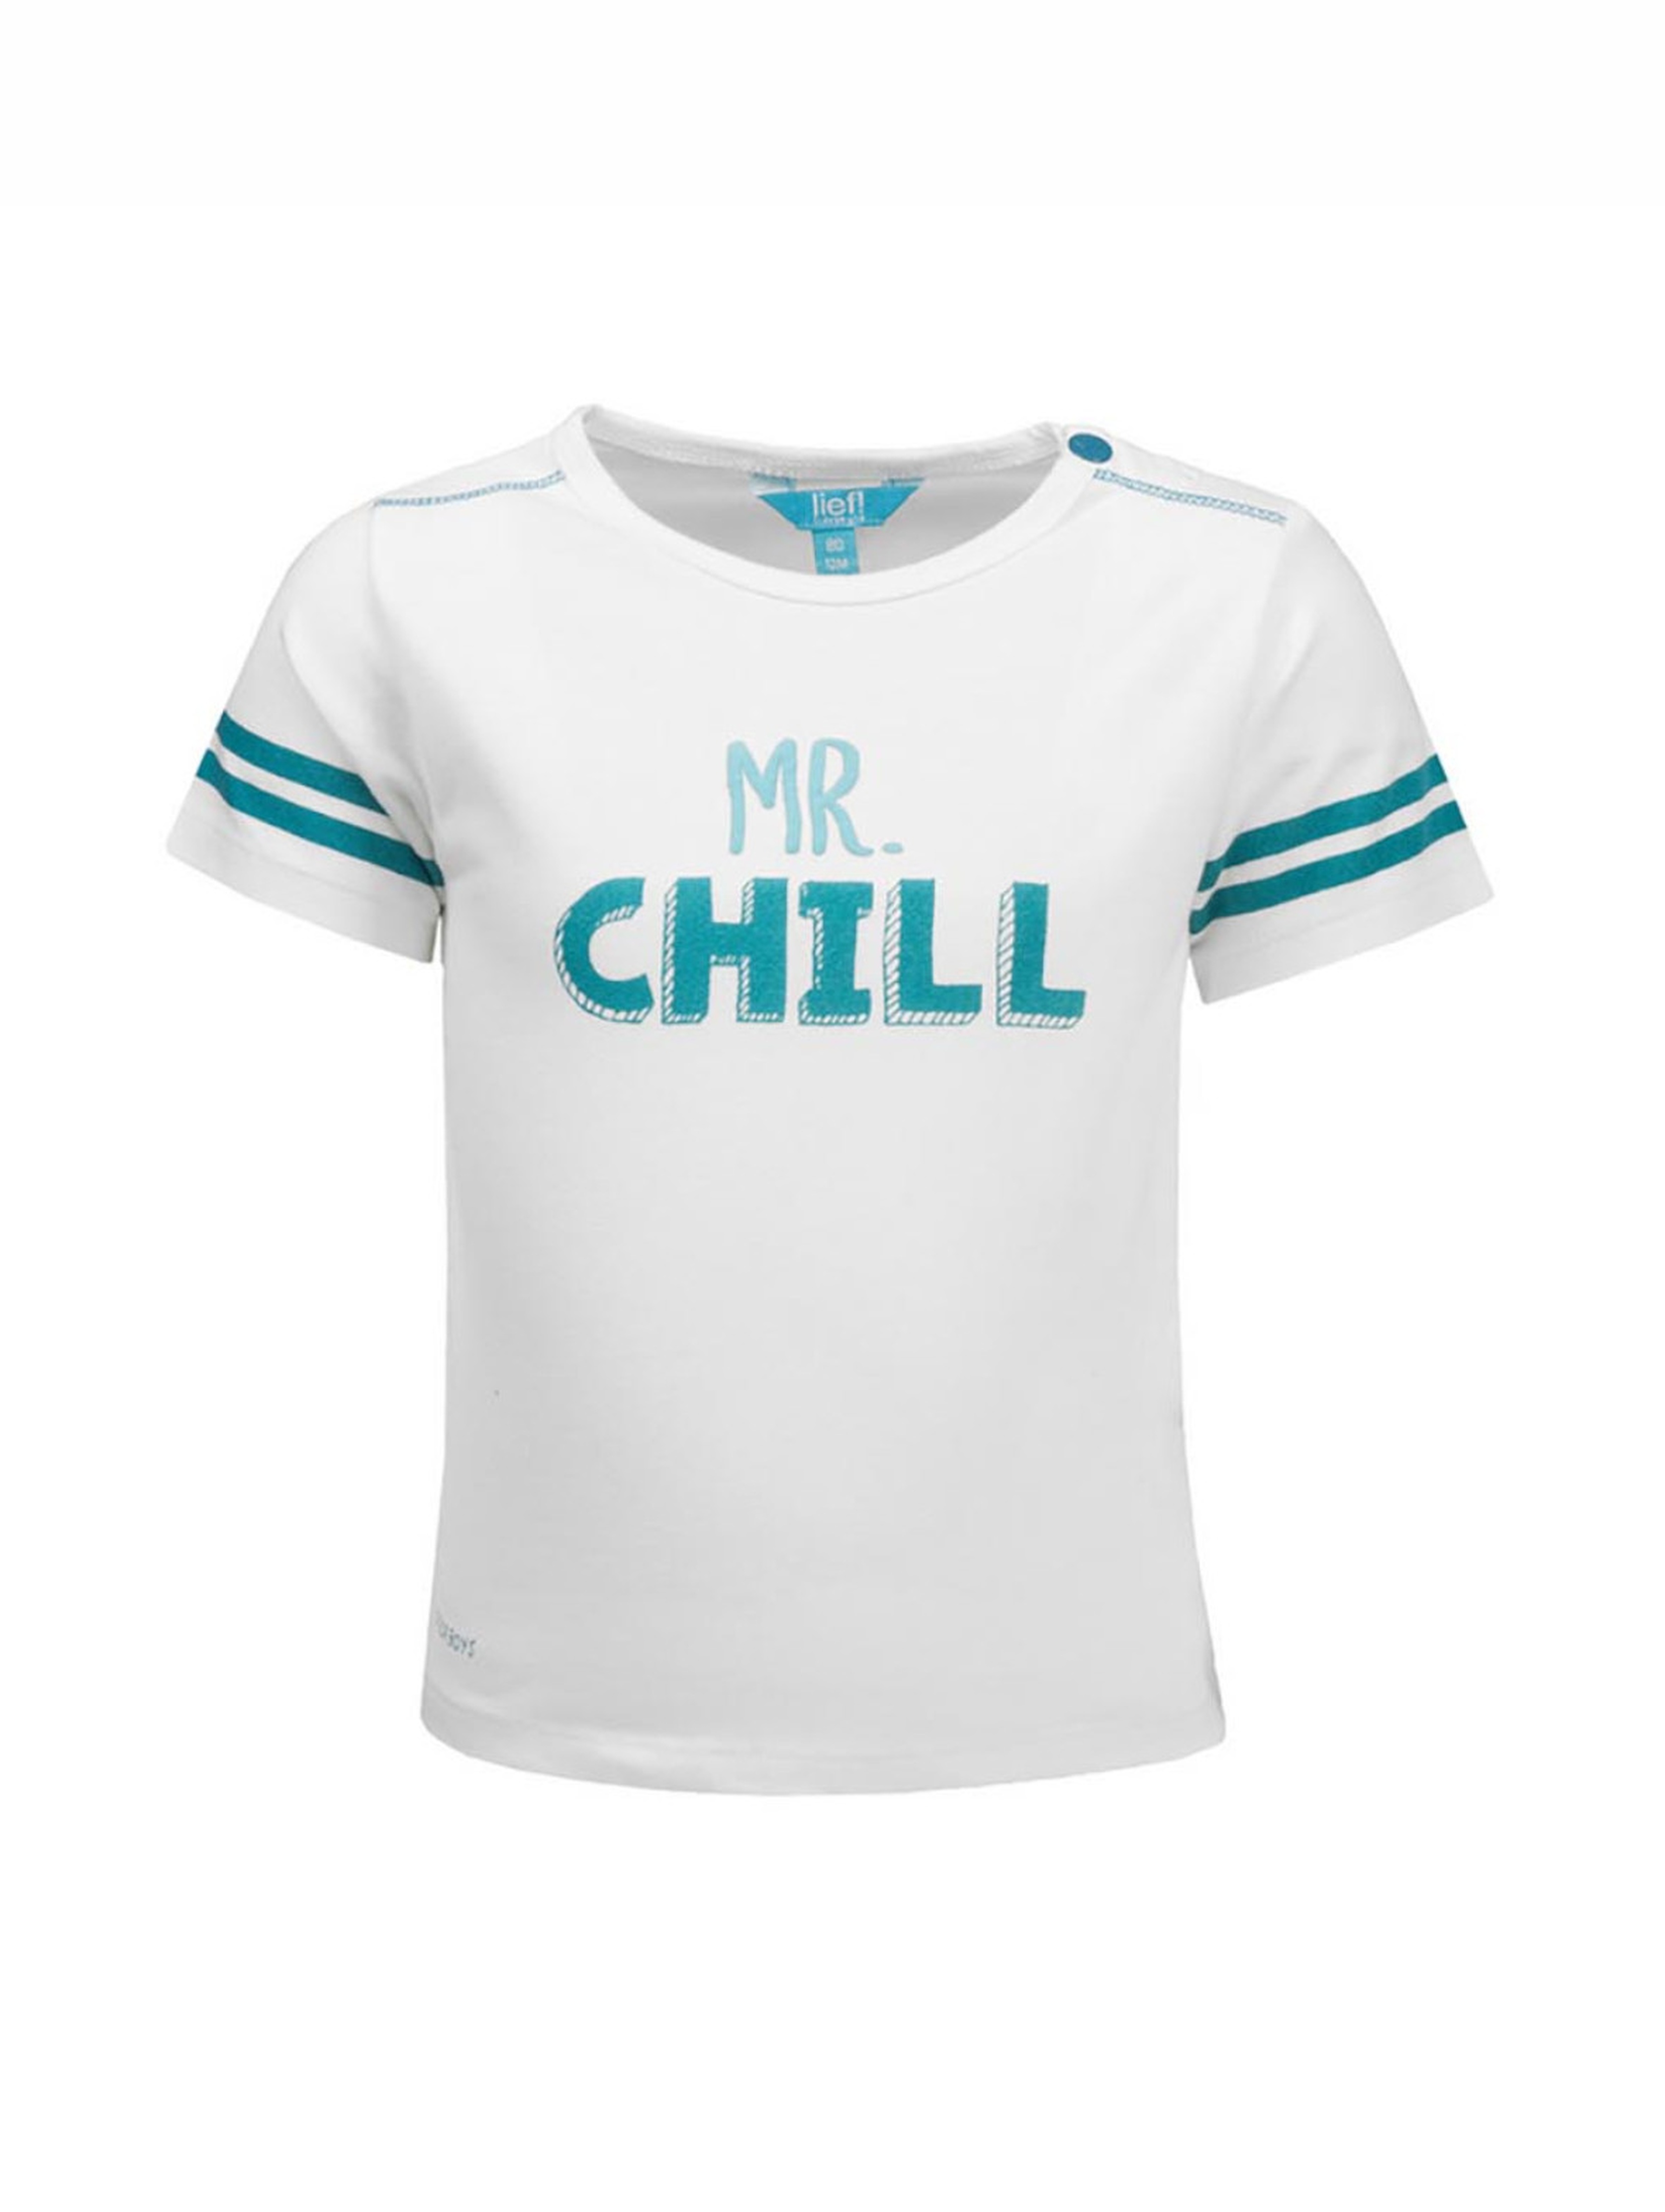 T-shirt chłopięcy, biały, Mr. Chill, Lief